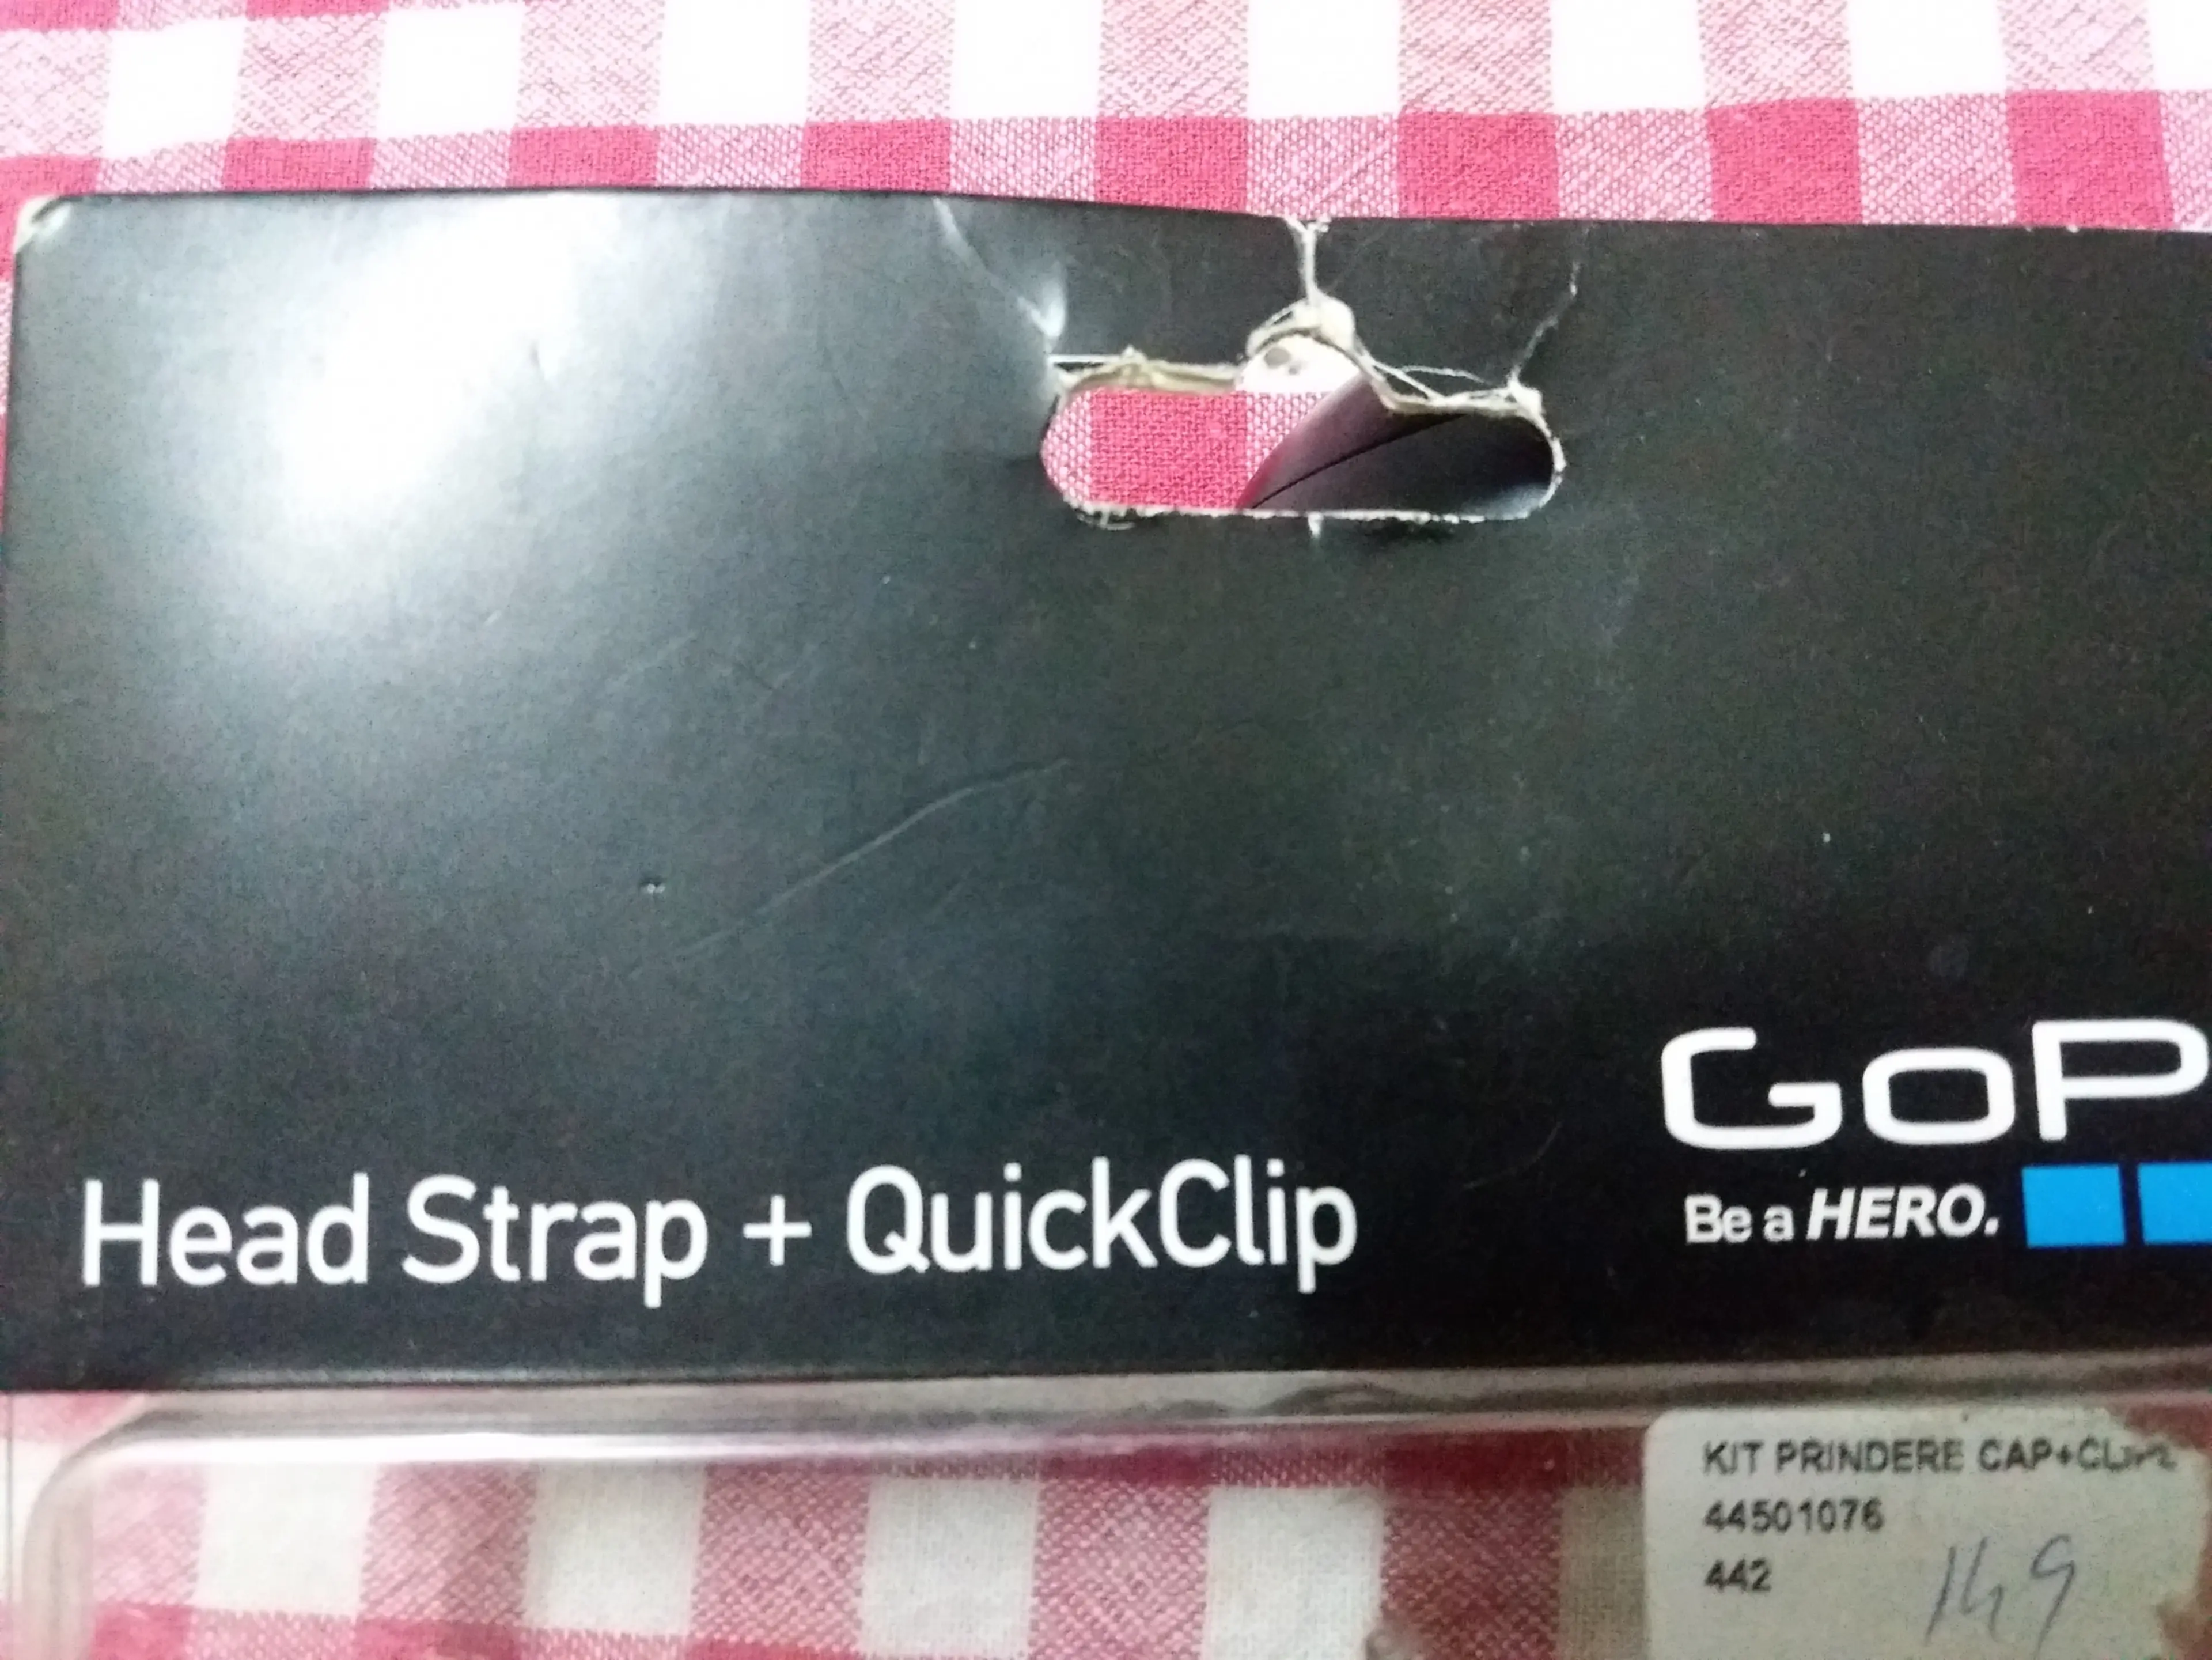 4. GoPro - Head Strap + QuickClip - Ham de cap + clips sapca / curea